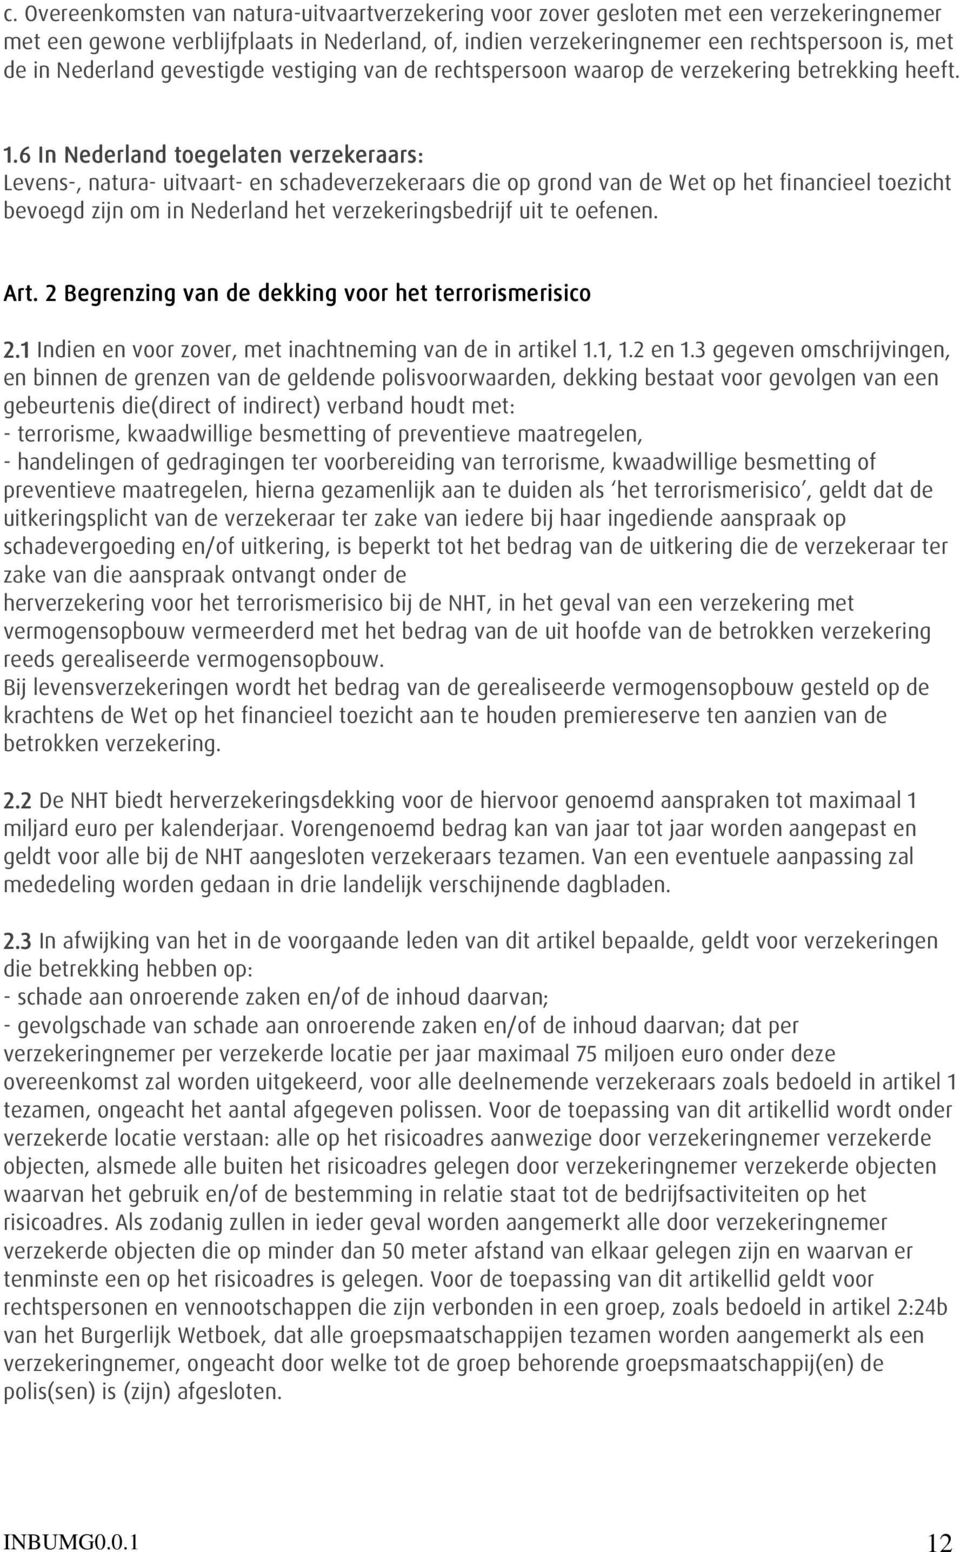 6 In Nederland toegelaten verzekeraars: Levens-, natura- uitvaart- en schadeverzekeraars die op grond van de Wet op het financieel toezicht bevoegd zijn om in Nederland het verzekeringsbedrijf uit te